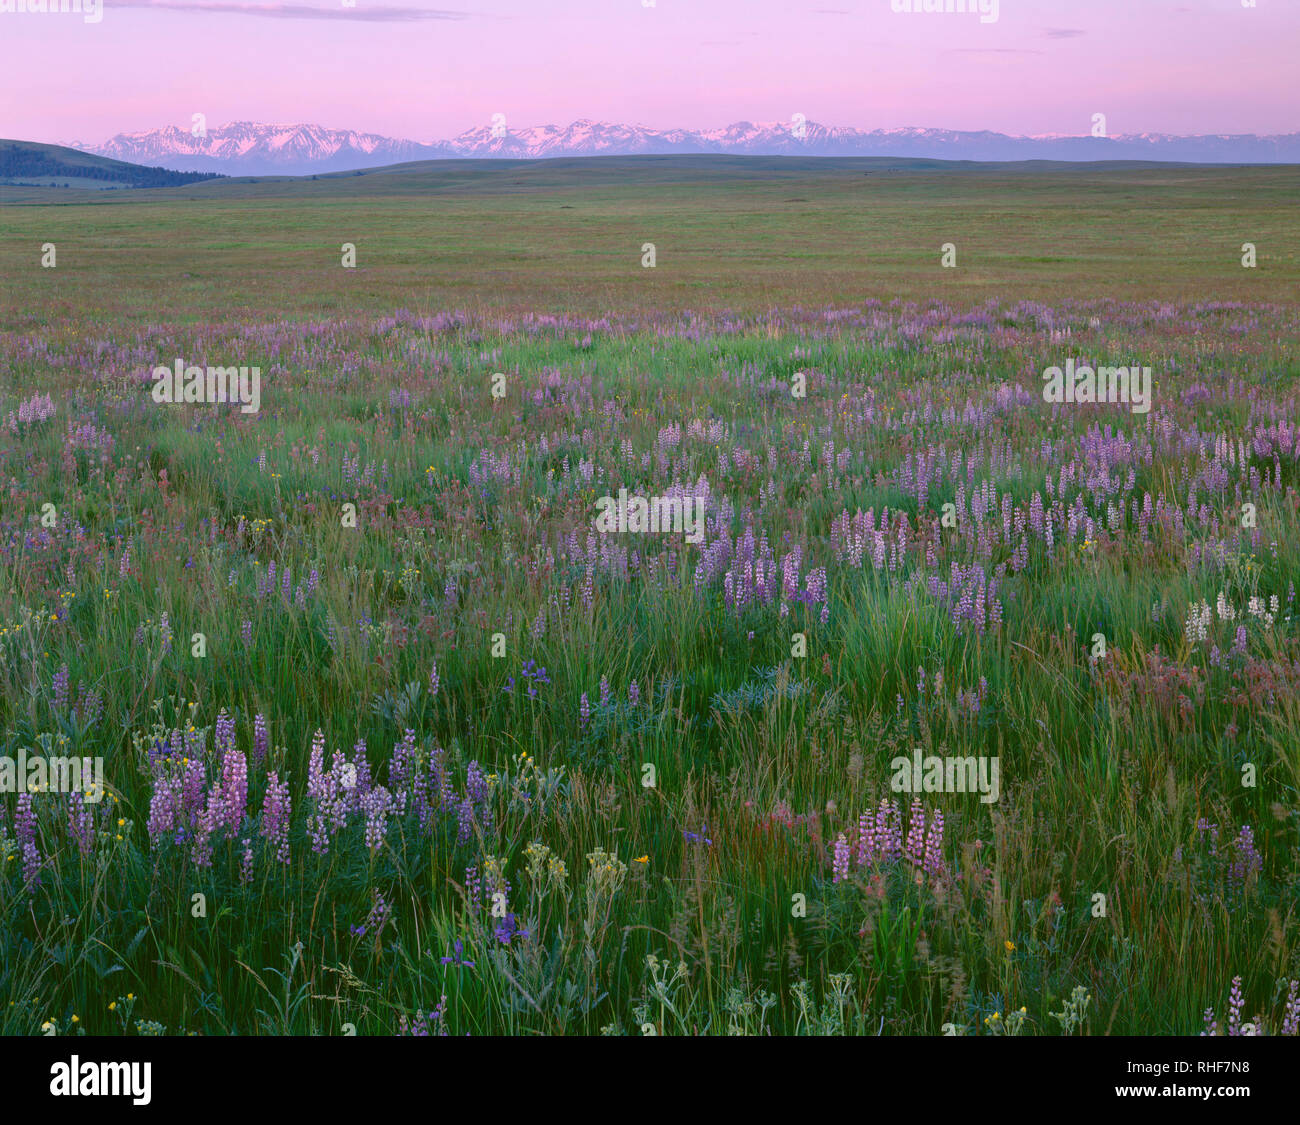 USA, Oregon, Wallowa County, Zumwalt Prairie Preserve, lupino florece junto con pastos nativos, mientras que la salida del sol calienta las distantes montañas Wallowa. Foto de stock